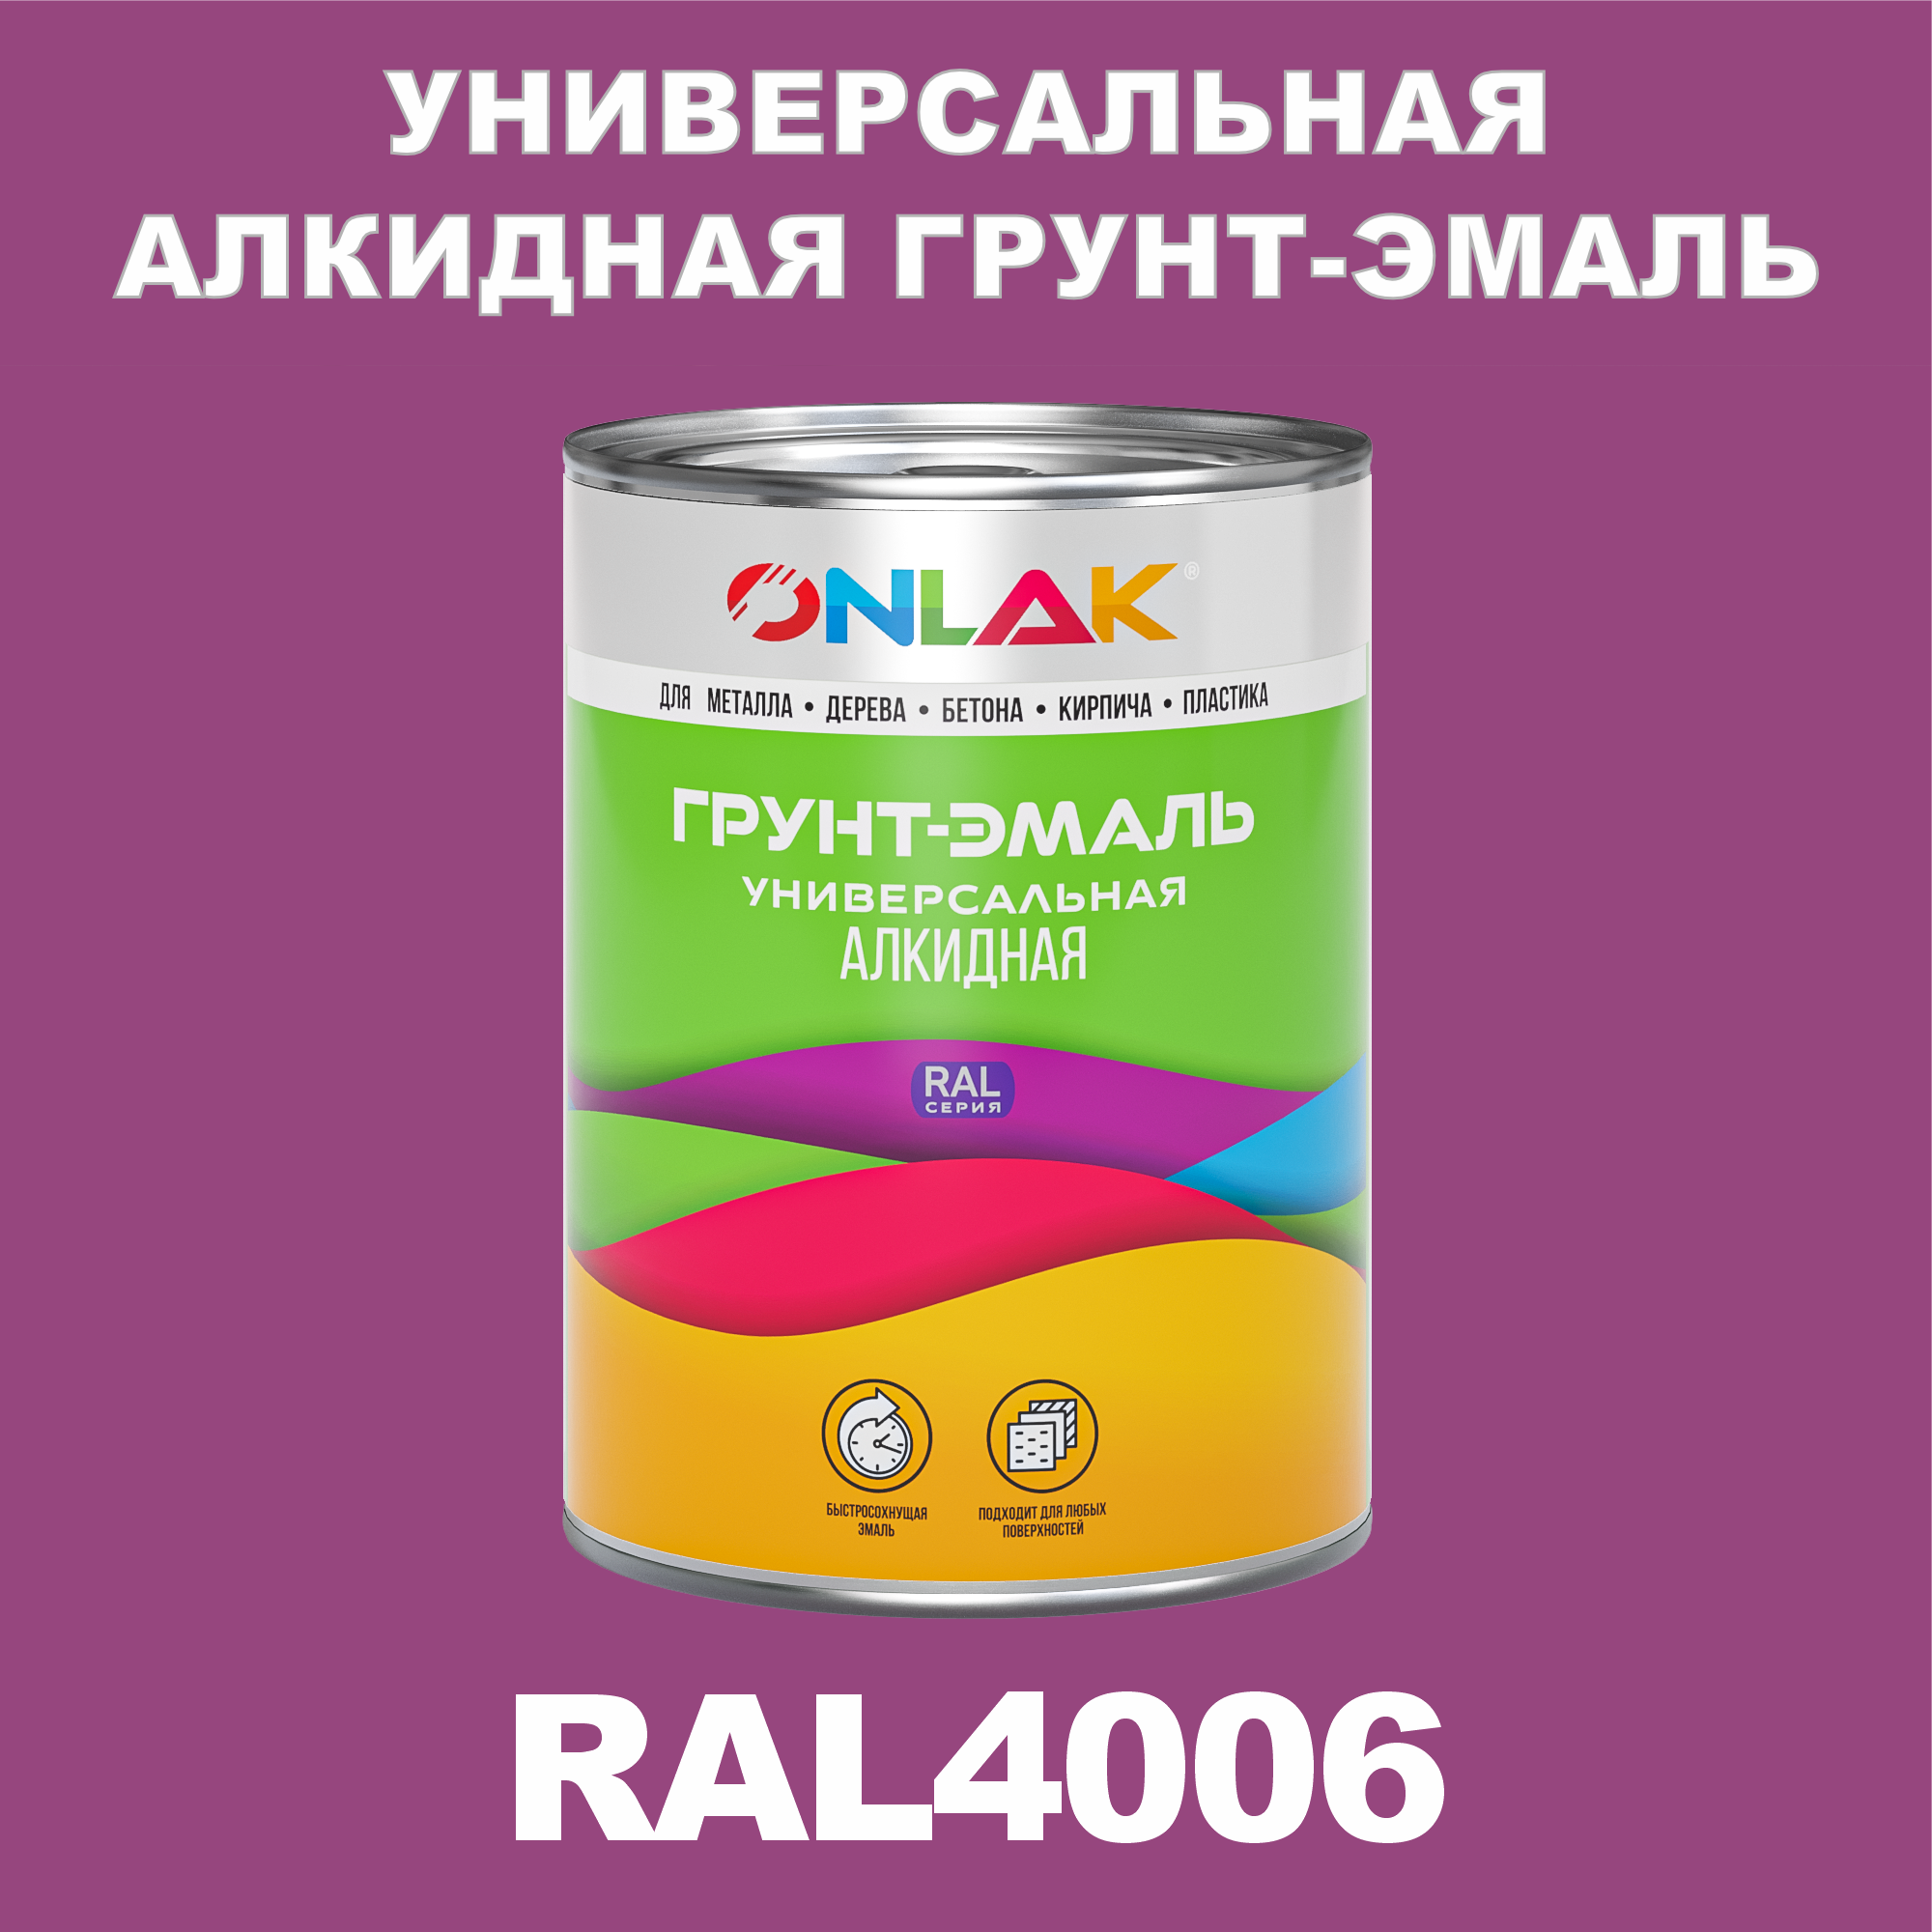 Грунт-эмаль ONLAK 1К RAL4006 антикоррозионная алкидная по металлу по ржавчине 1 кг антикоррозионная грунт эмаль onlak ral 4008 фиолетовый 610 мл